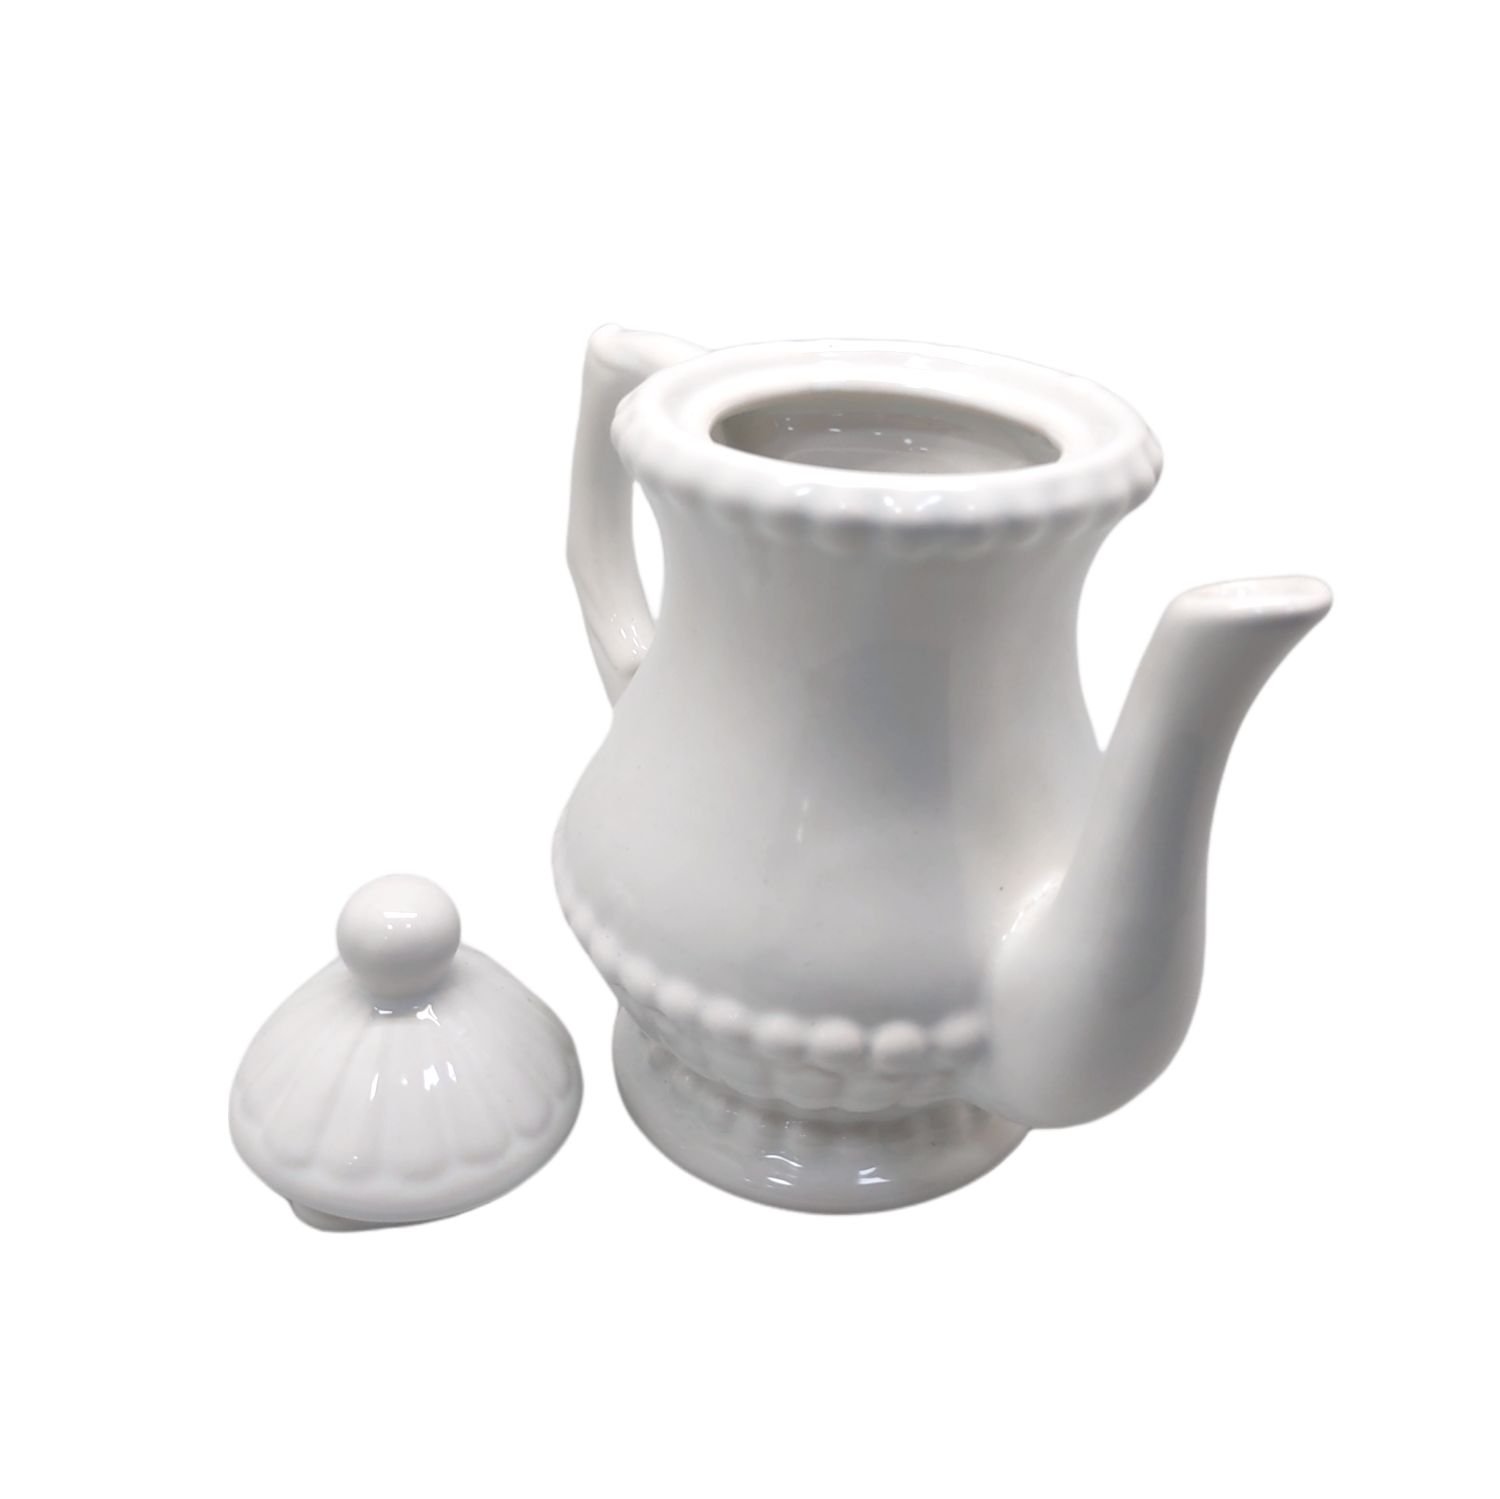 Bule de Ceramica Clean Branco Bolinha 800ml - 2